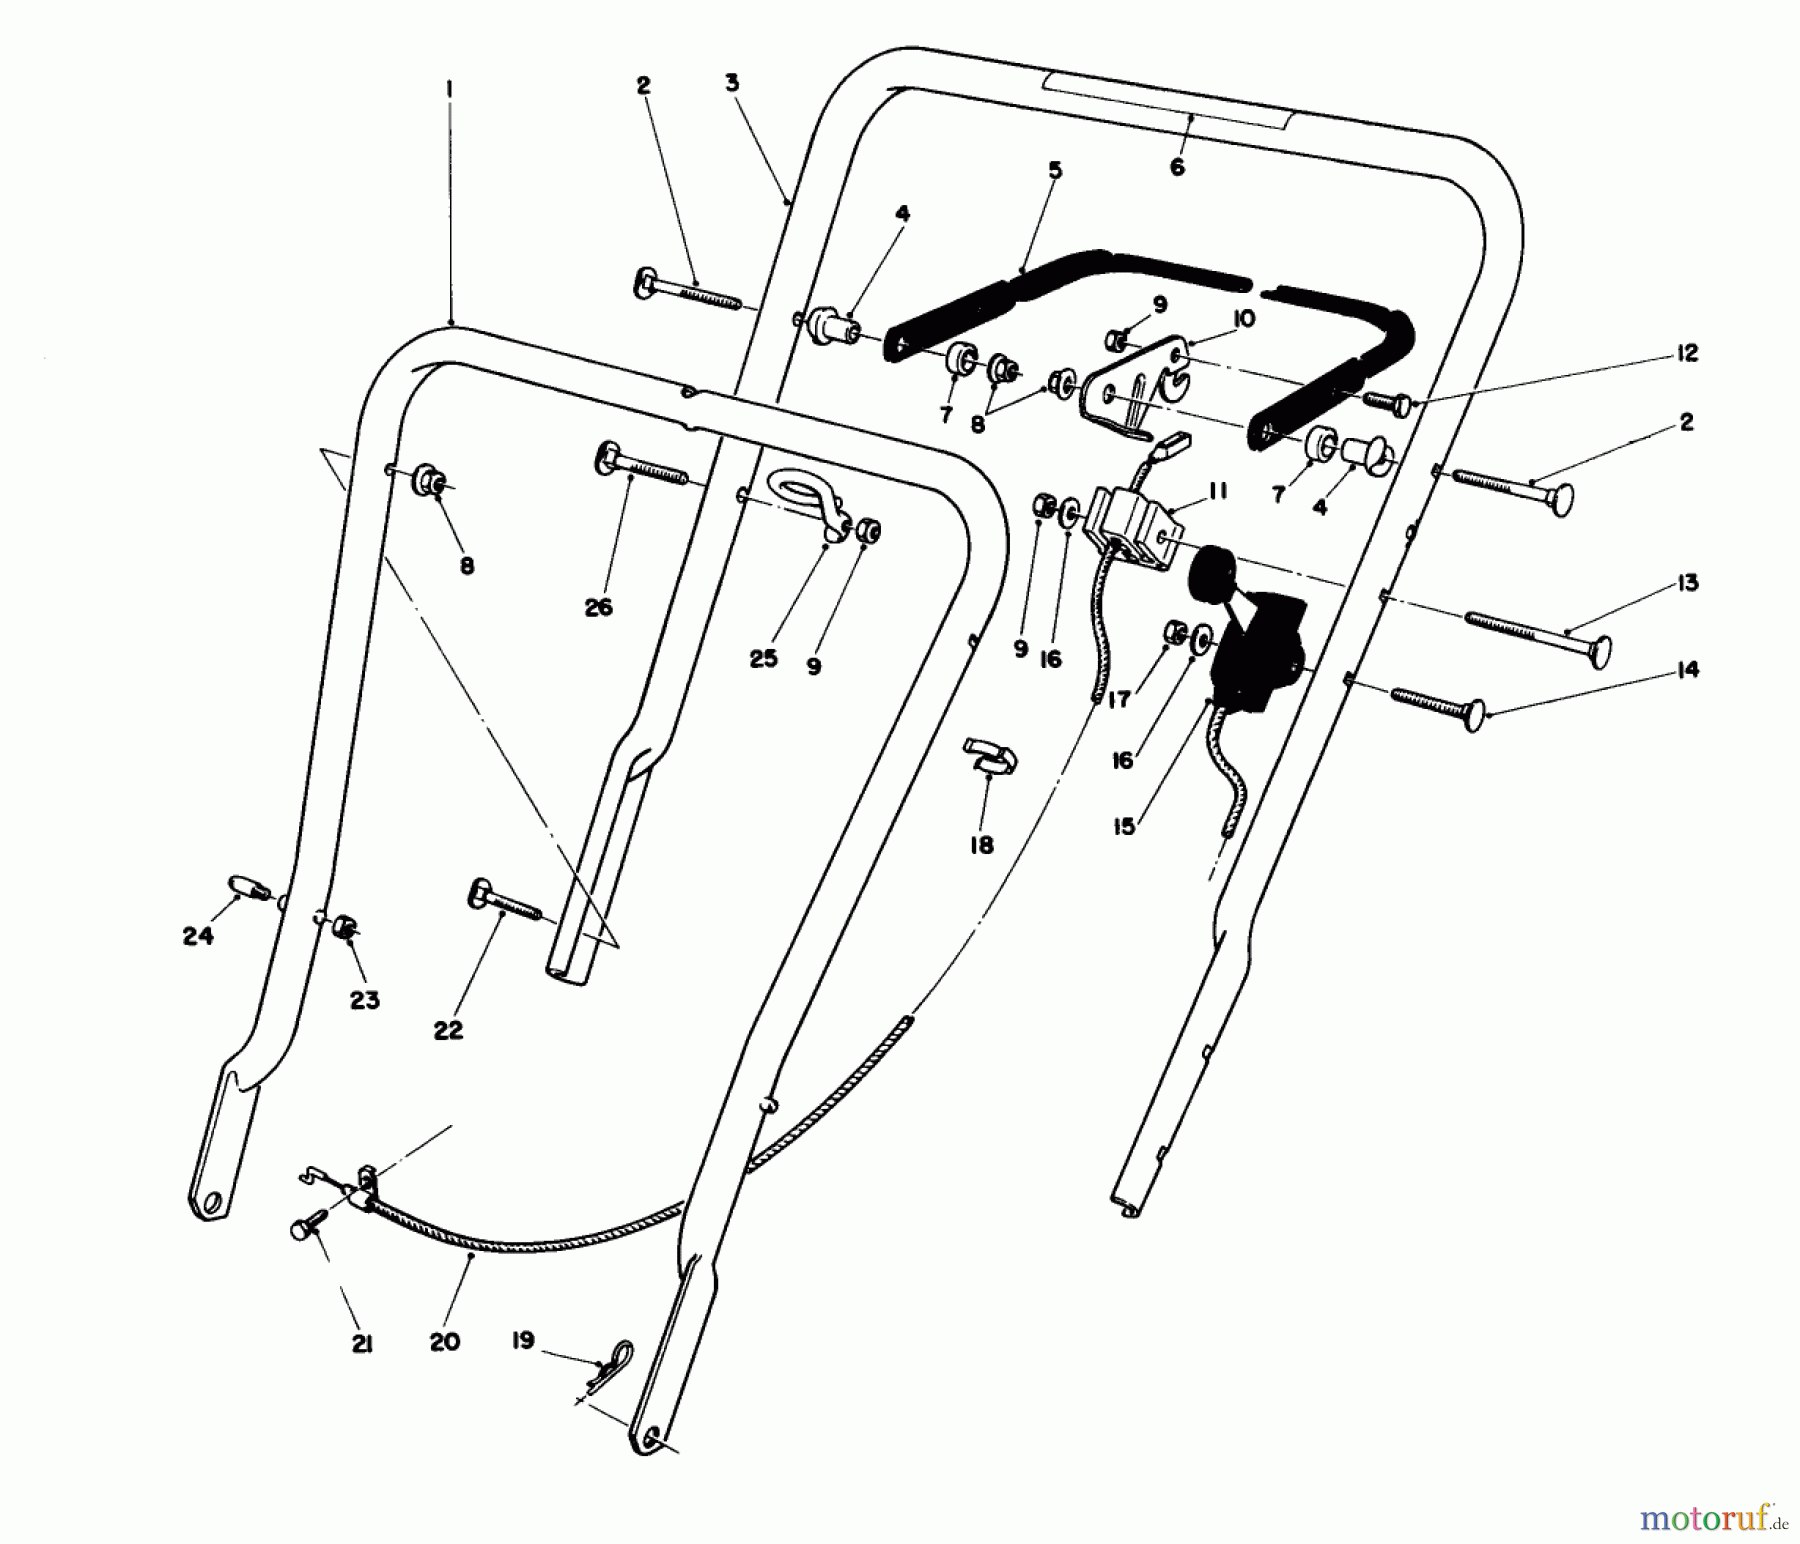  Toro Neu Mowers, Walk-Behind Seite 1 16575C - Toro Lawnmower, 1989 (9000001-9999999) HANDLE ASSEMBLY